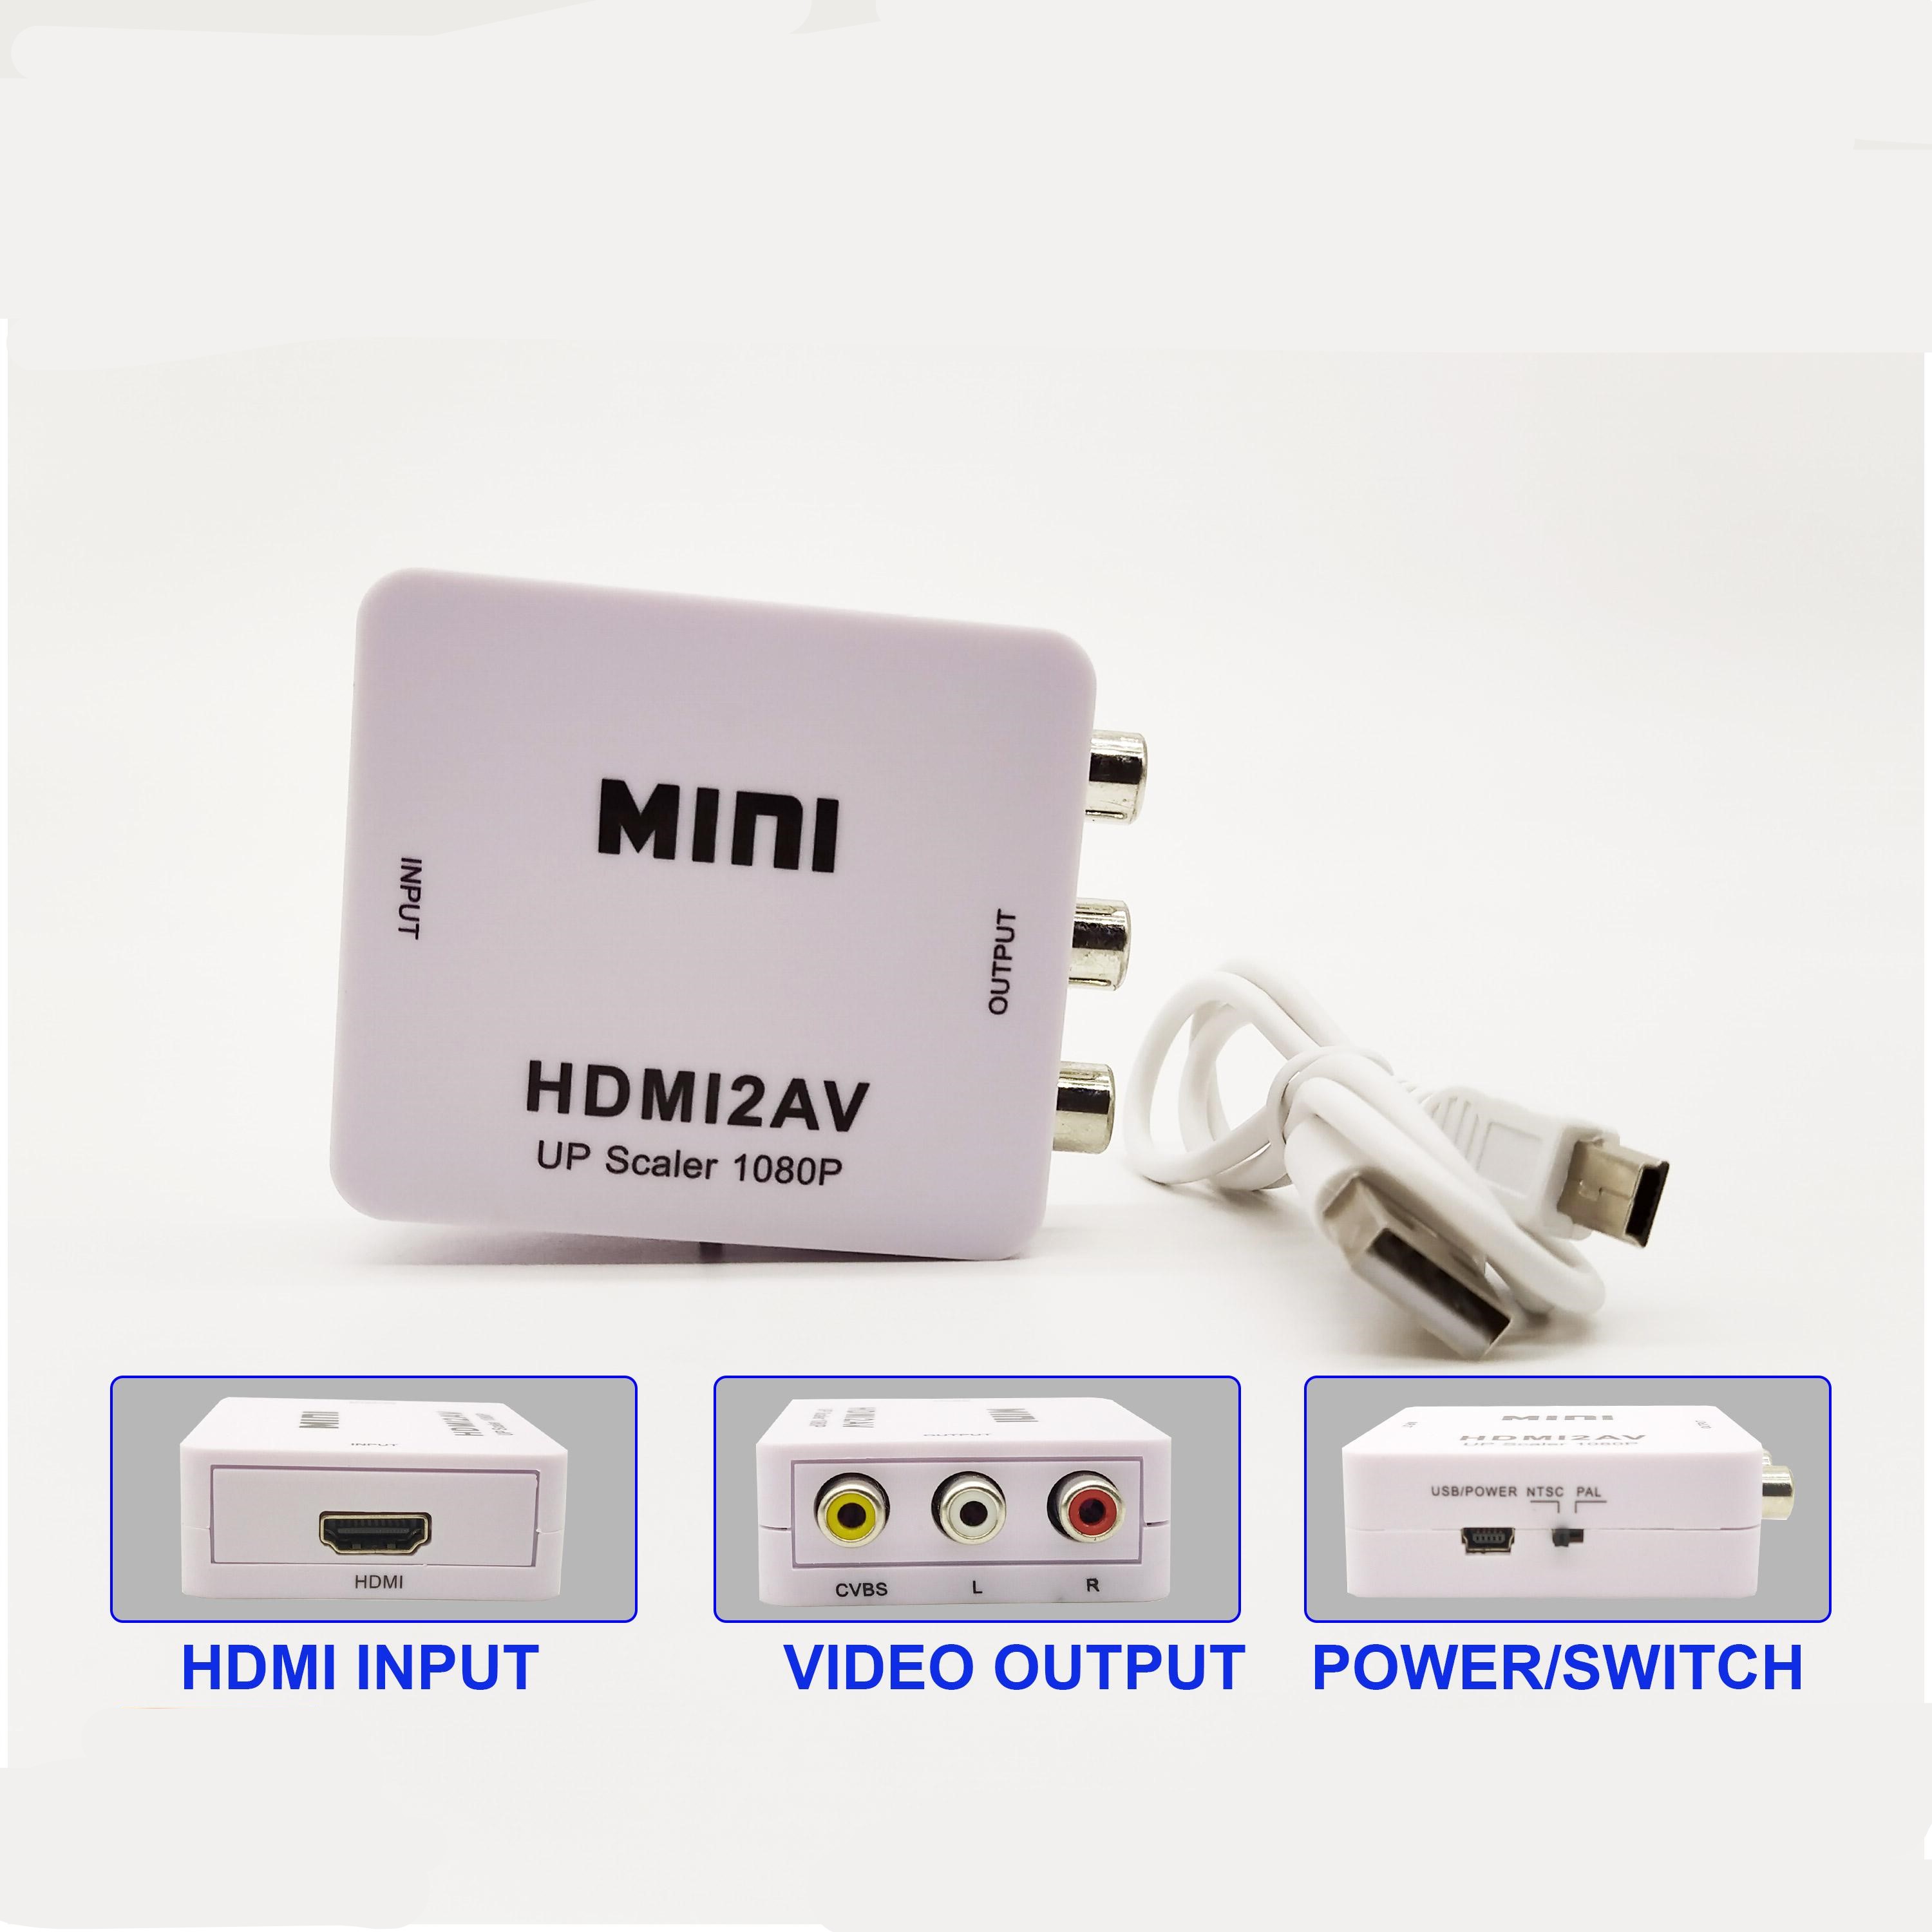 HUB Chuyển đổi mini HDMI sang AV chuyển đổi tín hiệu hình ảnh HDM hoặc tín hiệu âm thanh thành tín hiệu video tổng hợp AV (CVBS) và tín hiệu âm thanh nổi FL / FR, đồng thời hỗ trợ tín hiệu hệ thống DVI.